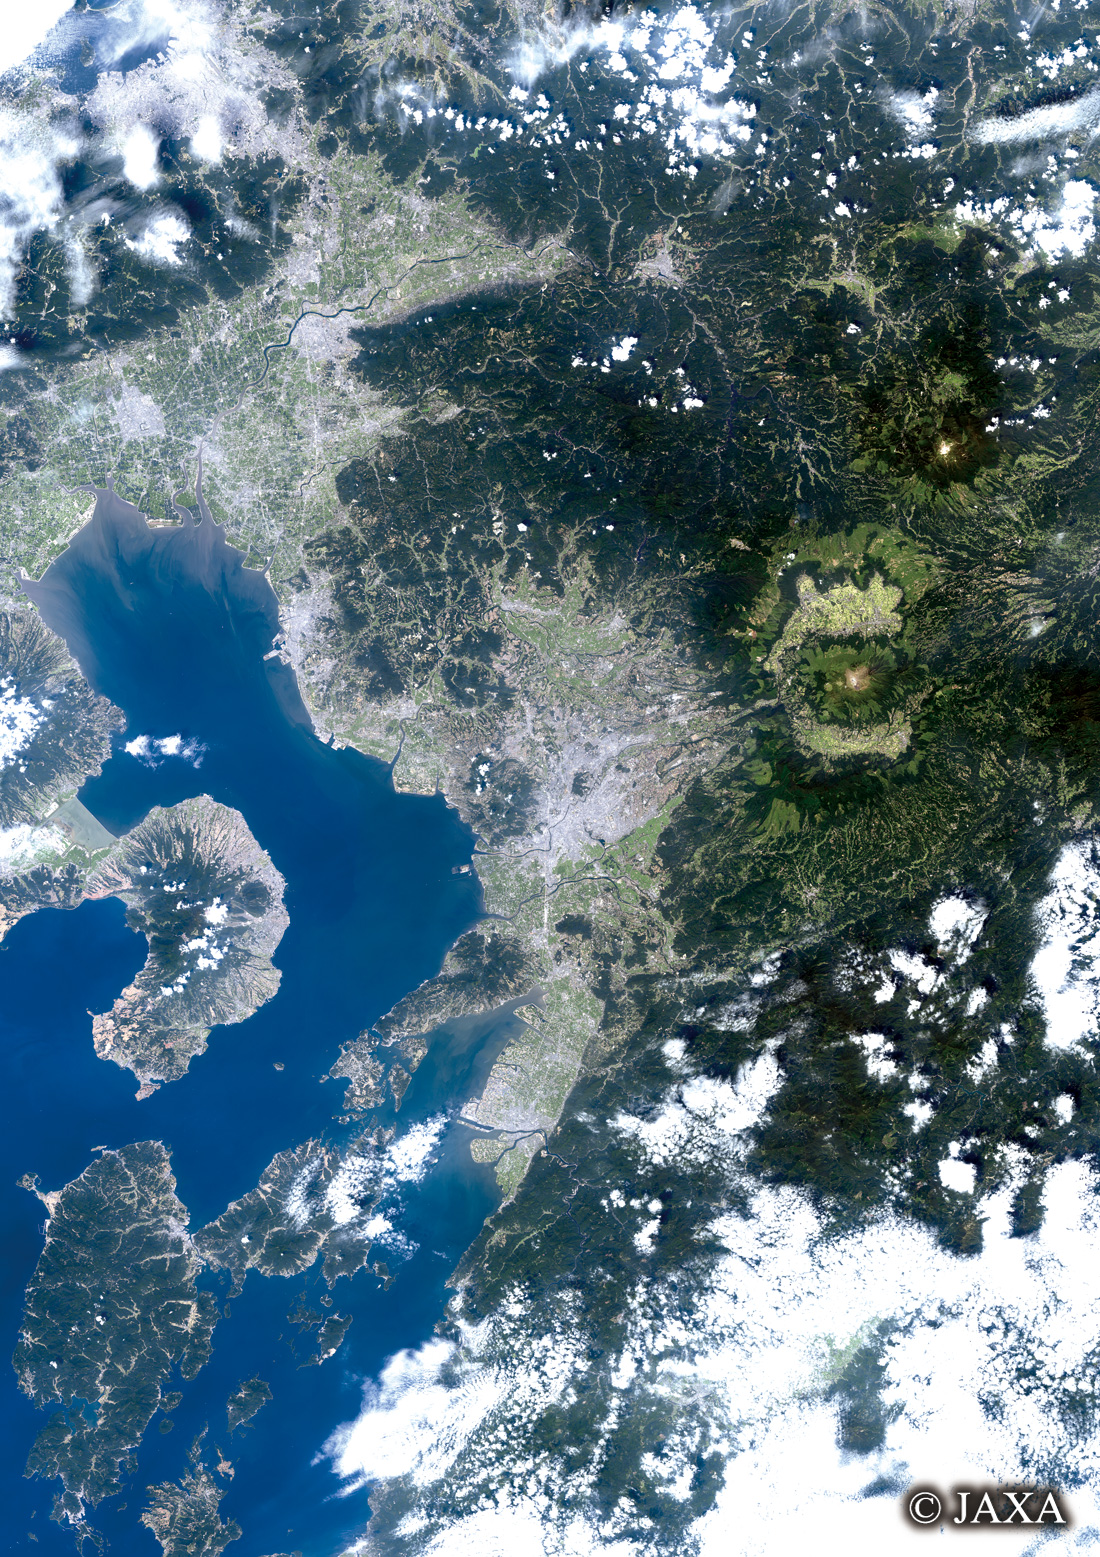 だいちから見た日本の都市 熊本県:衛星画像